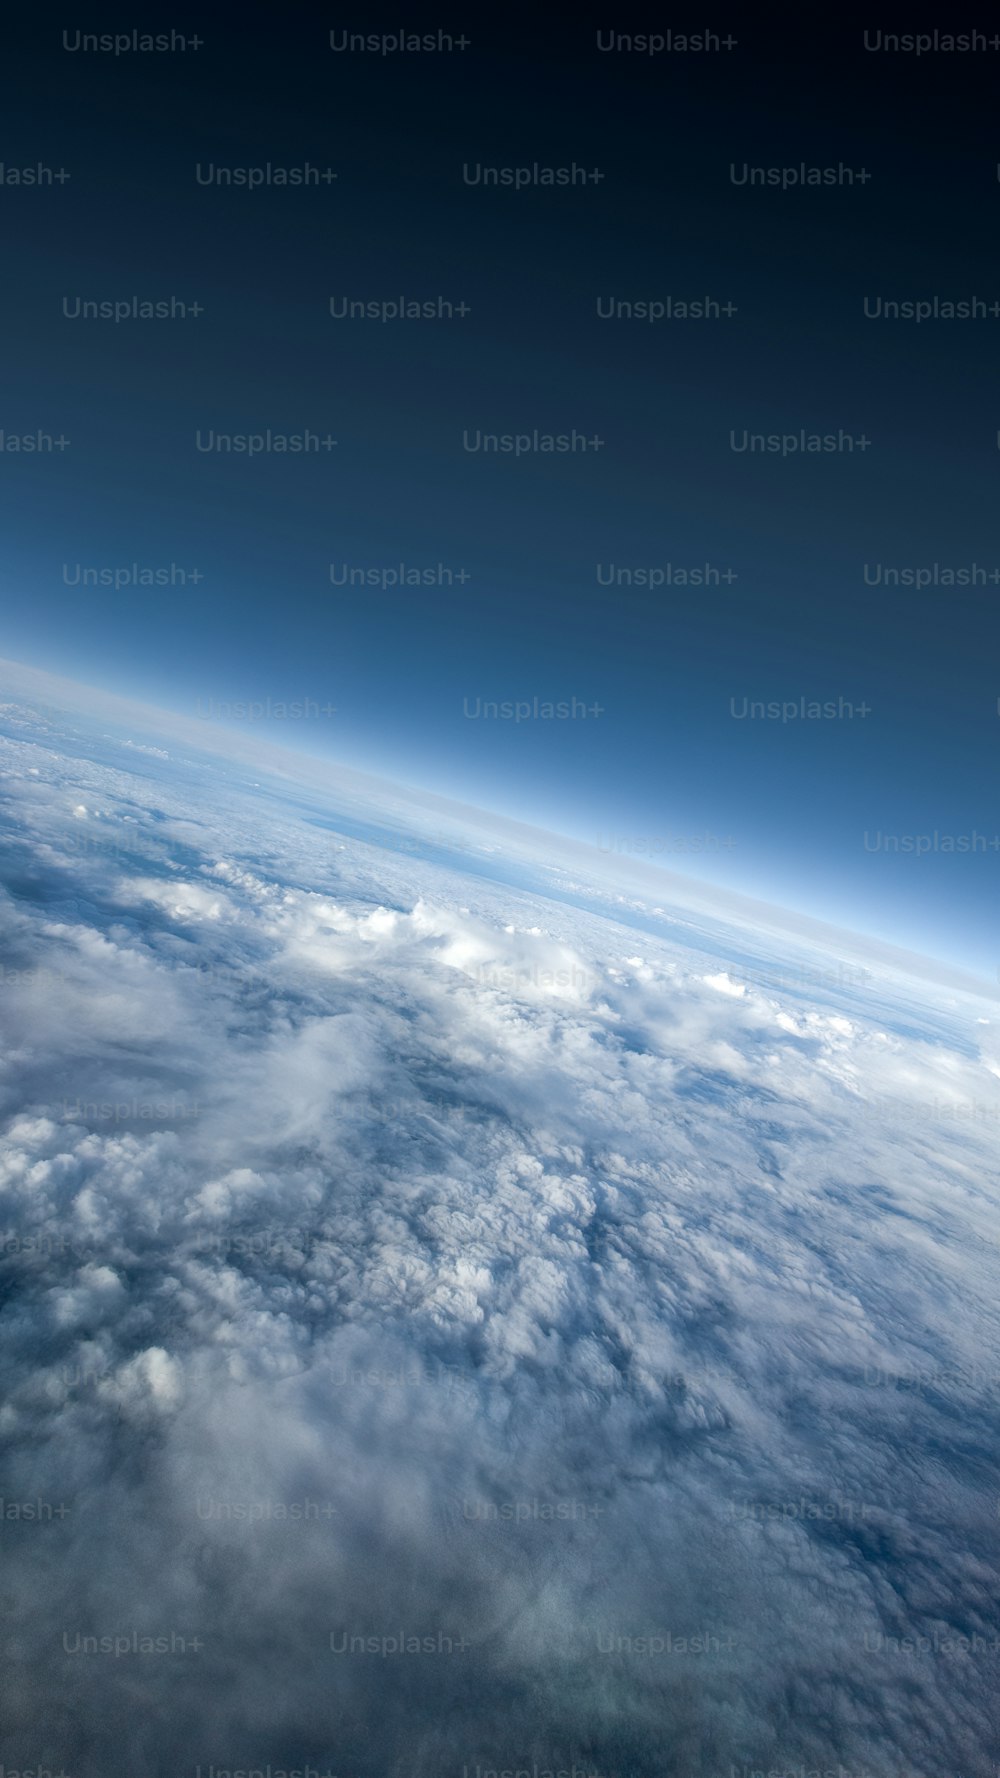 uma vista da Terra a partir do ônibus espacial